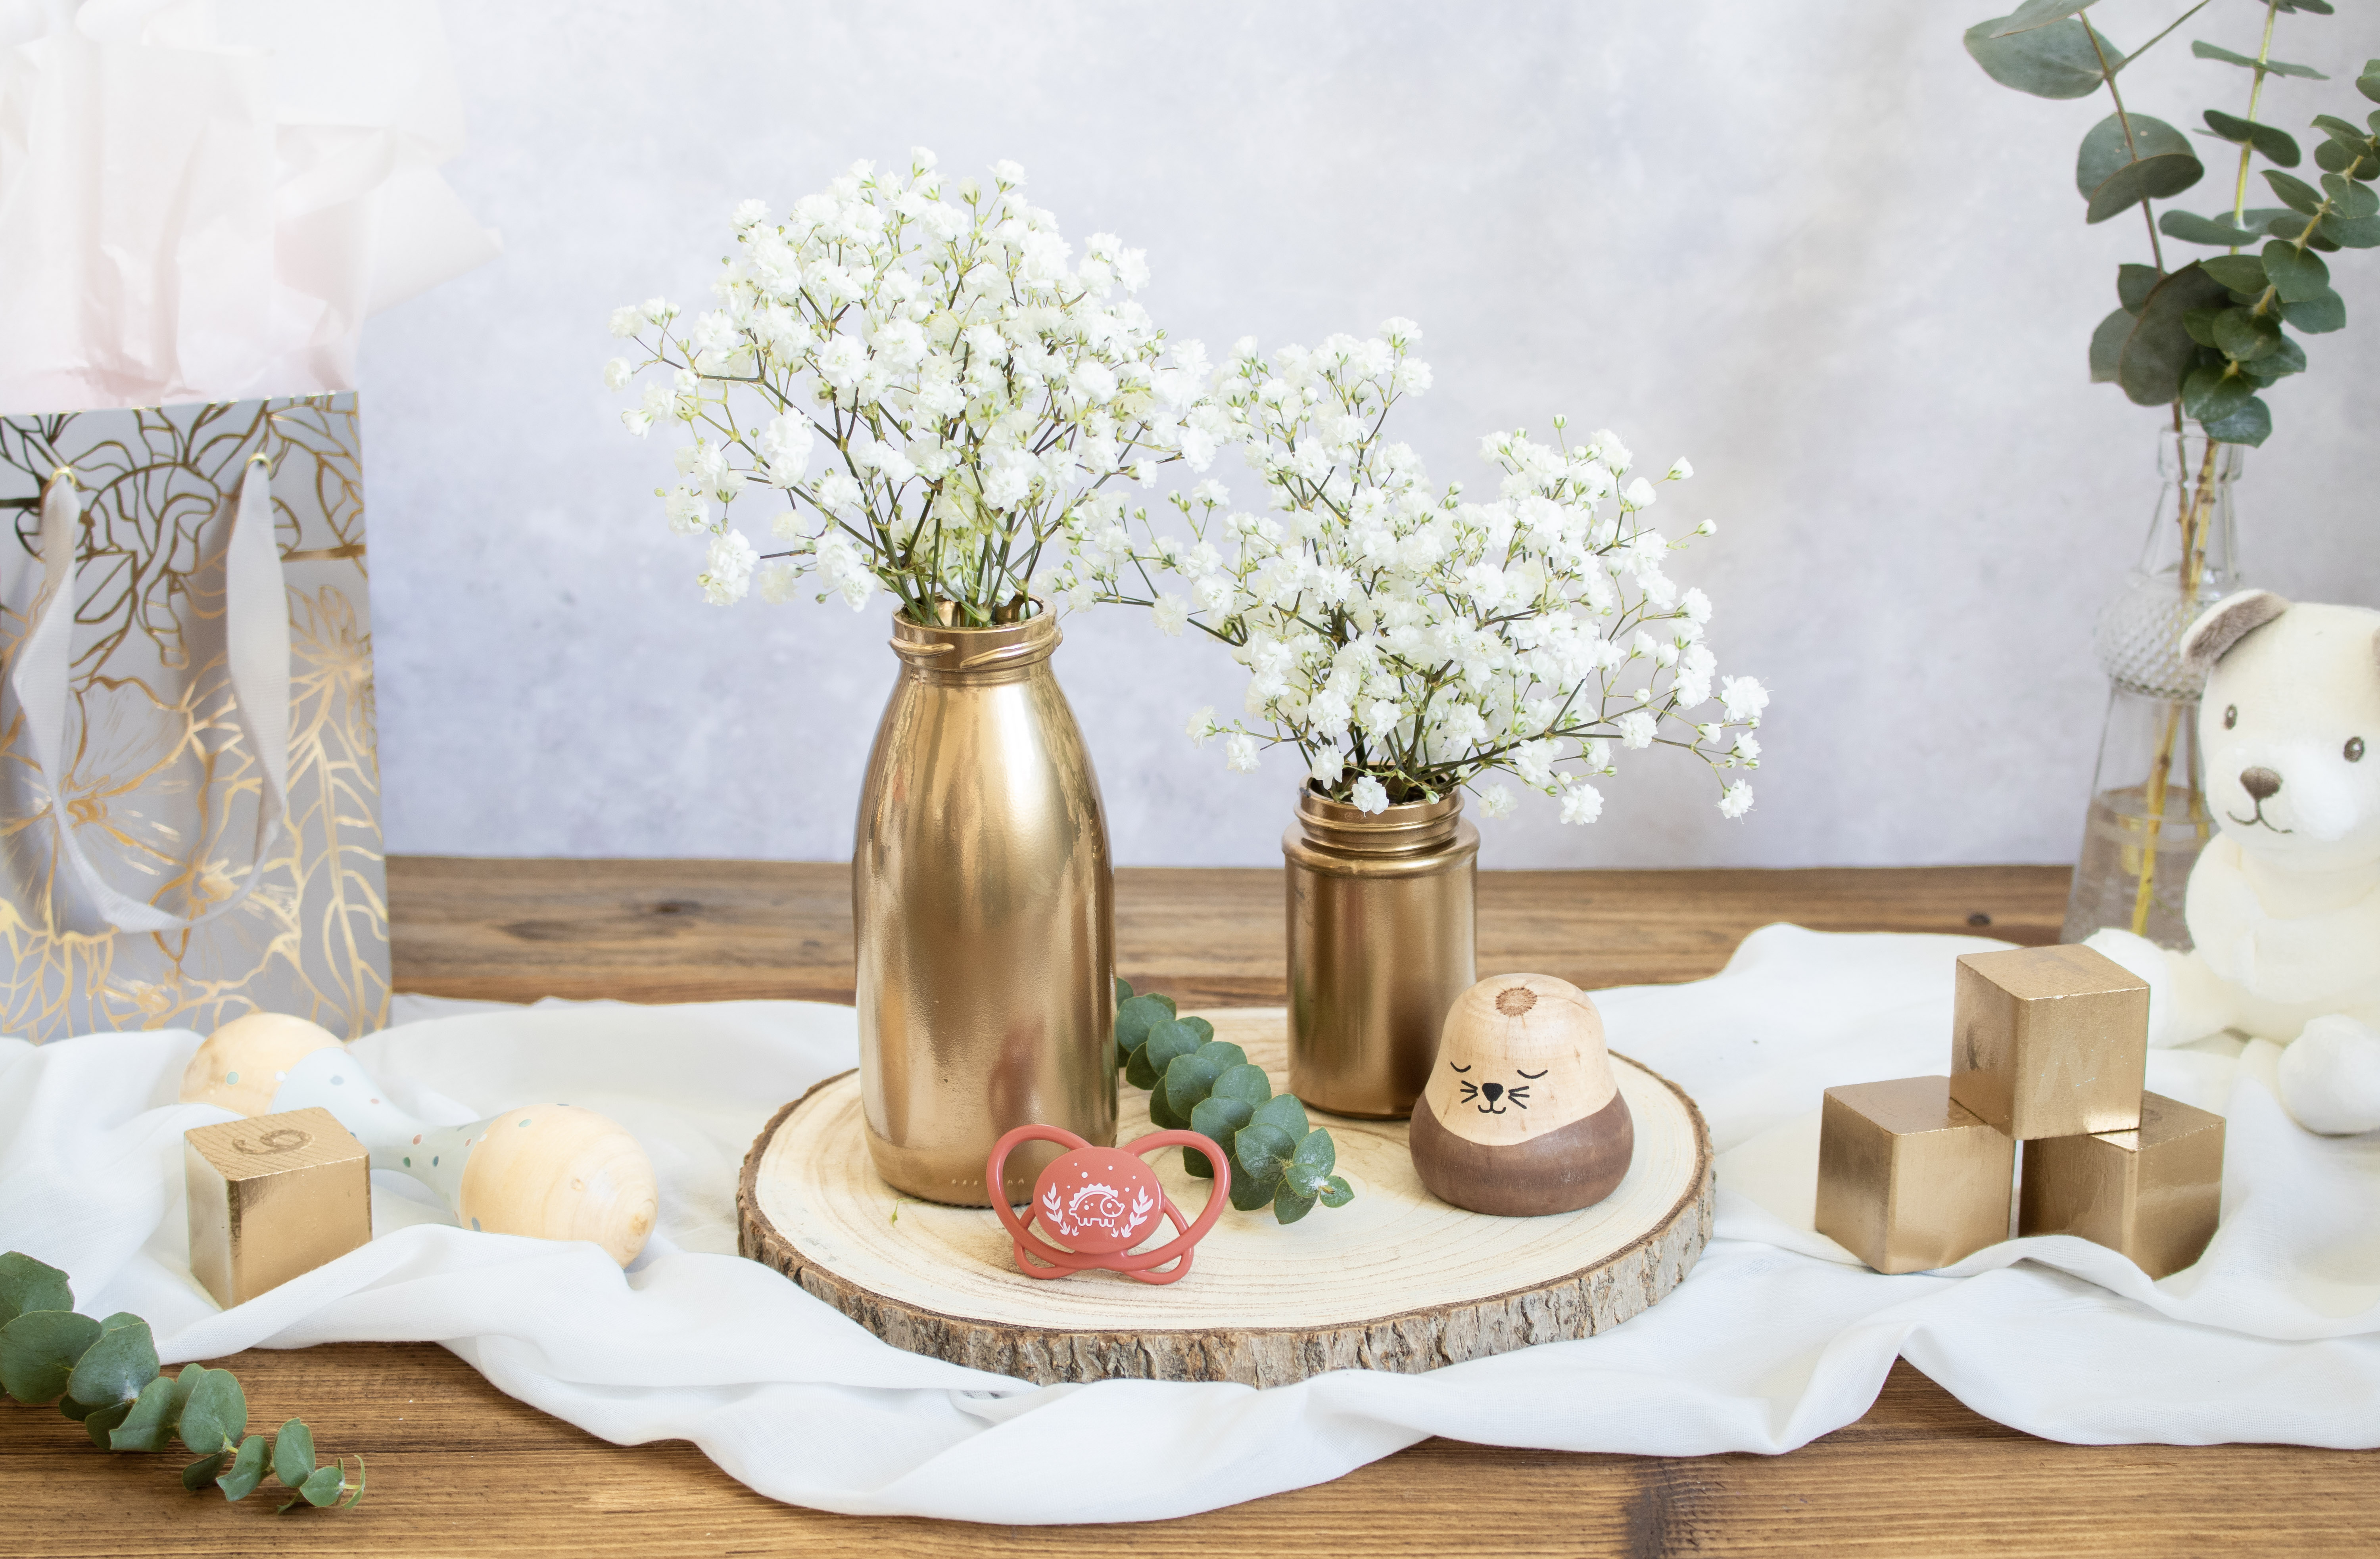 Vasetti per le pappe usate come lumini per decorare il tavolo.